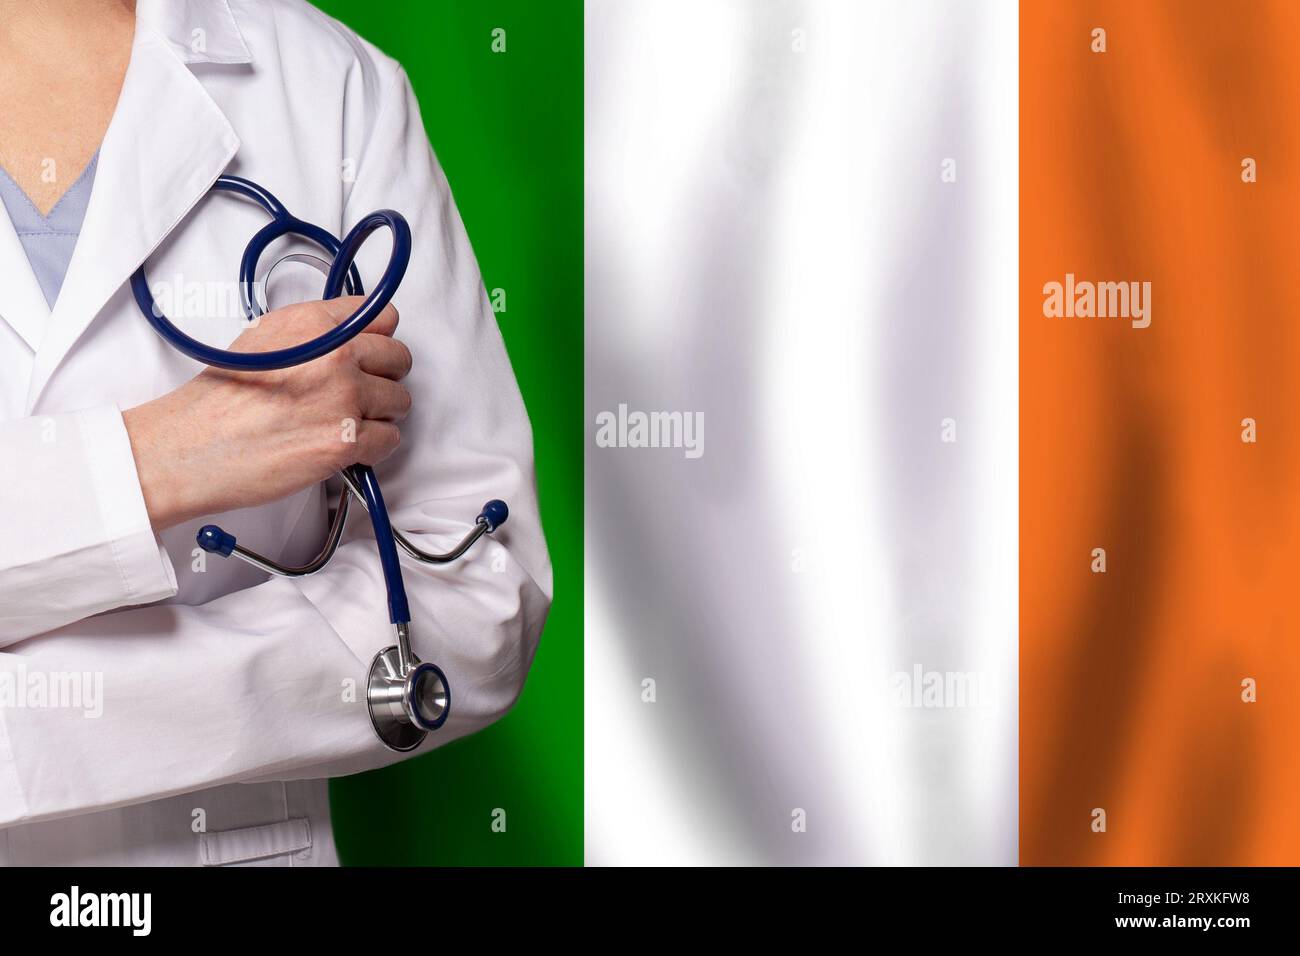 Sanità irlandese immagini e fotografie stock ad alta risoluzione - Alamy